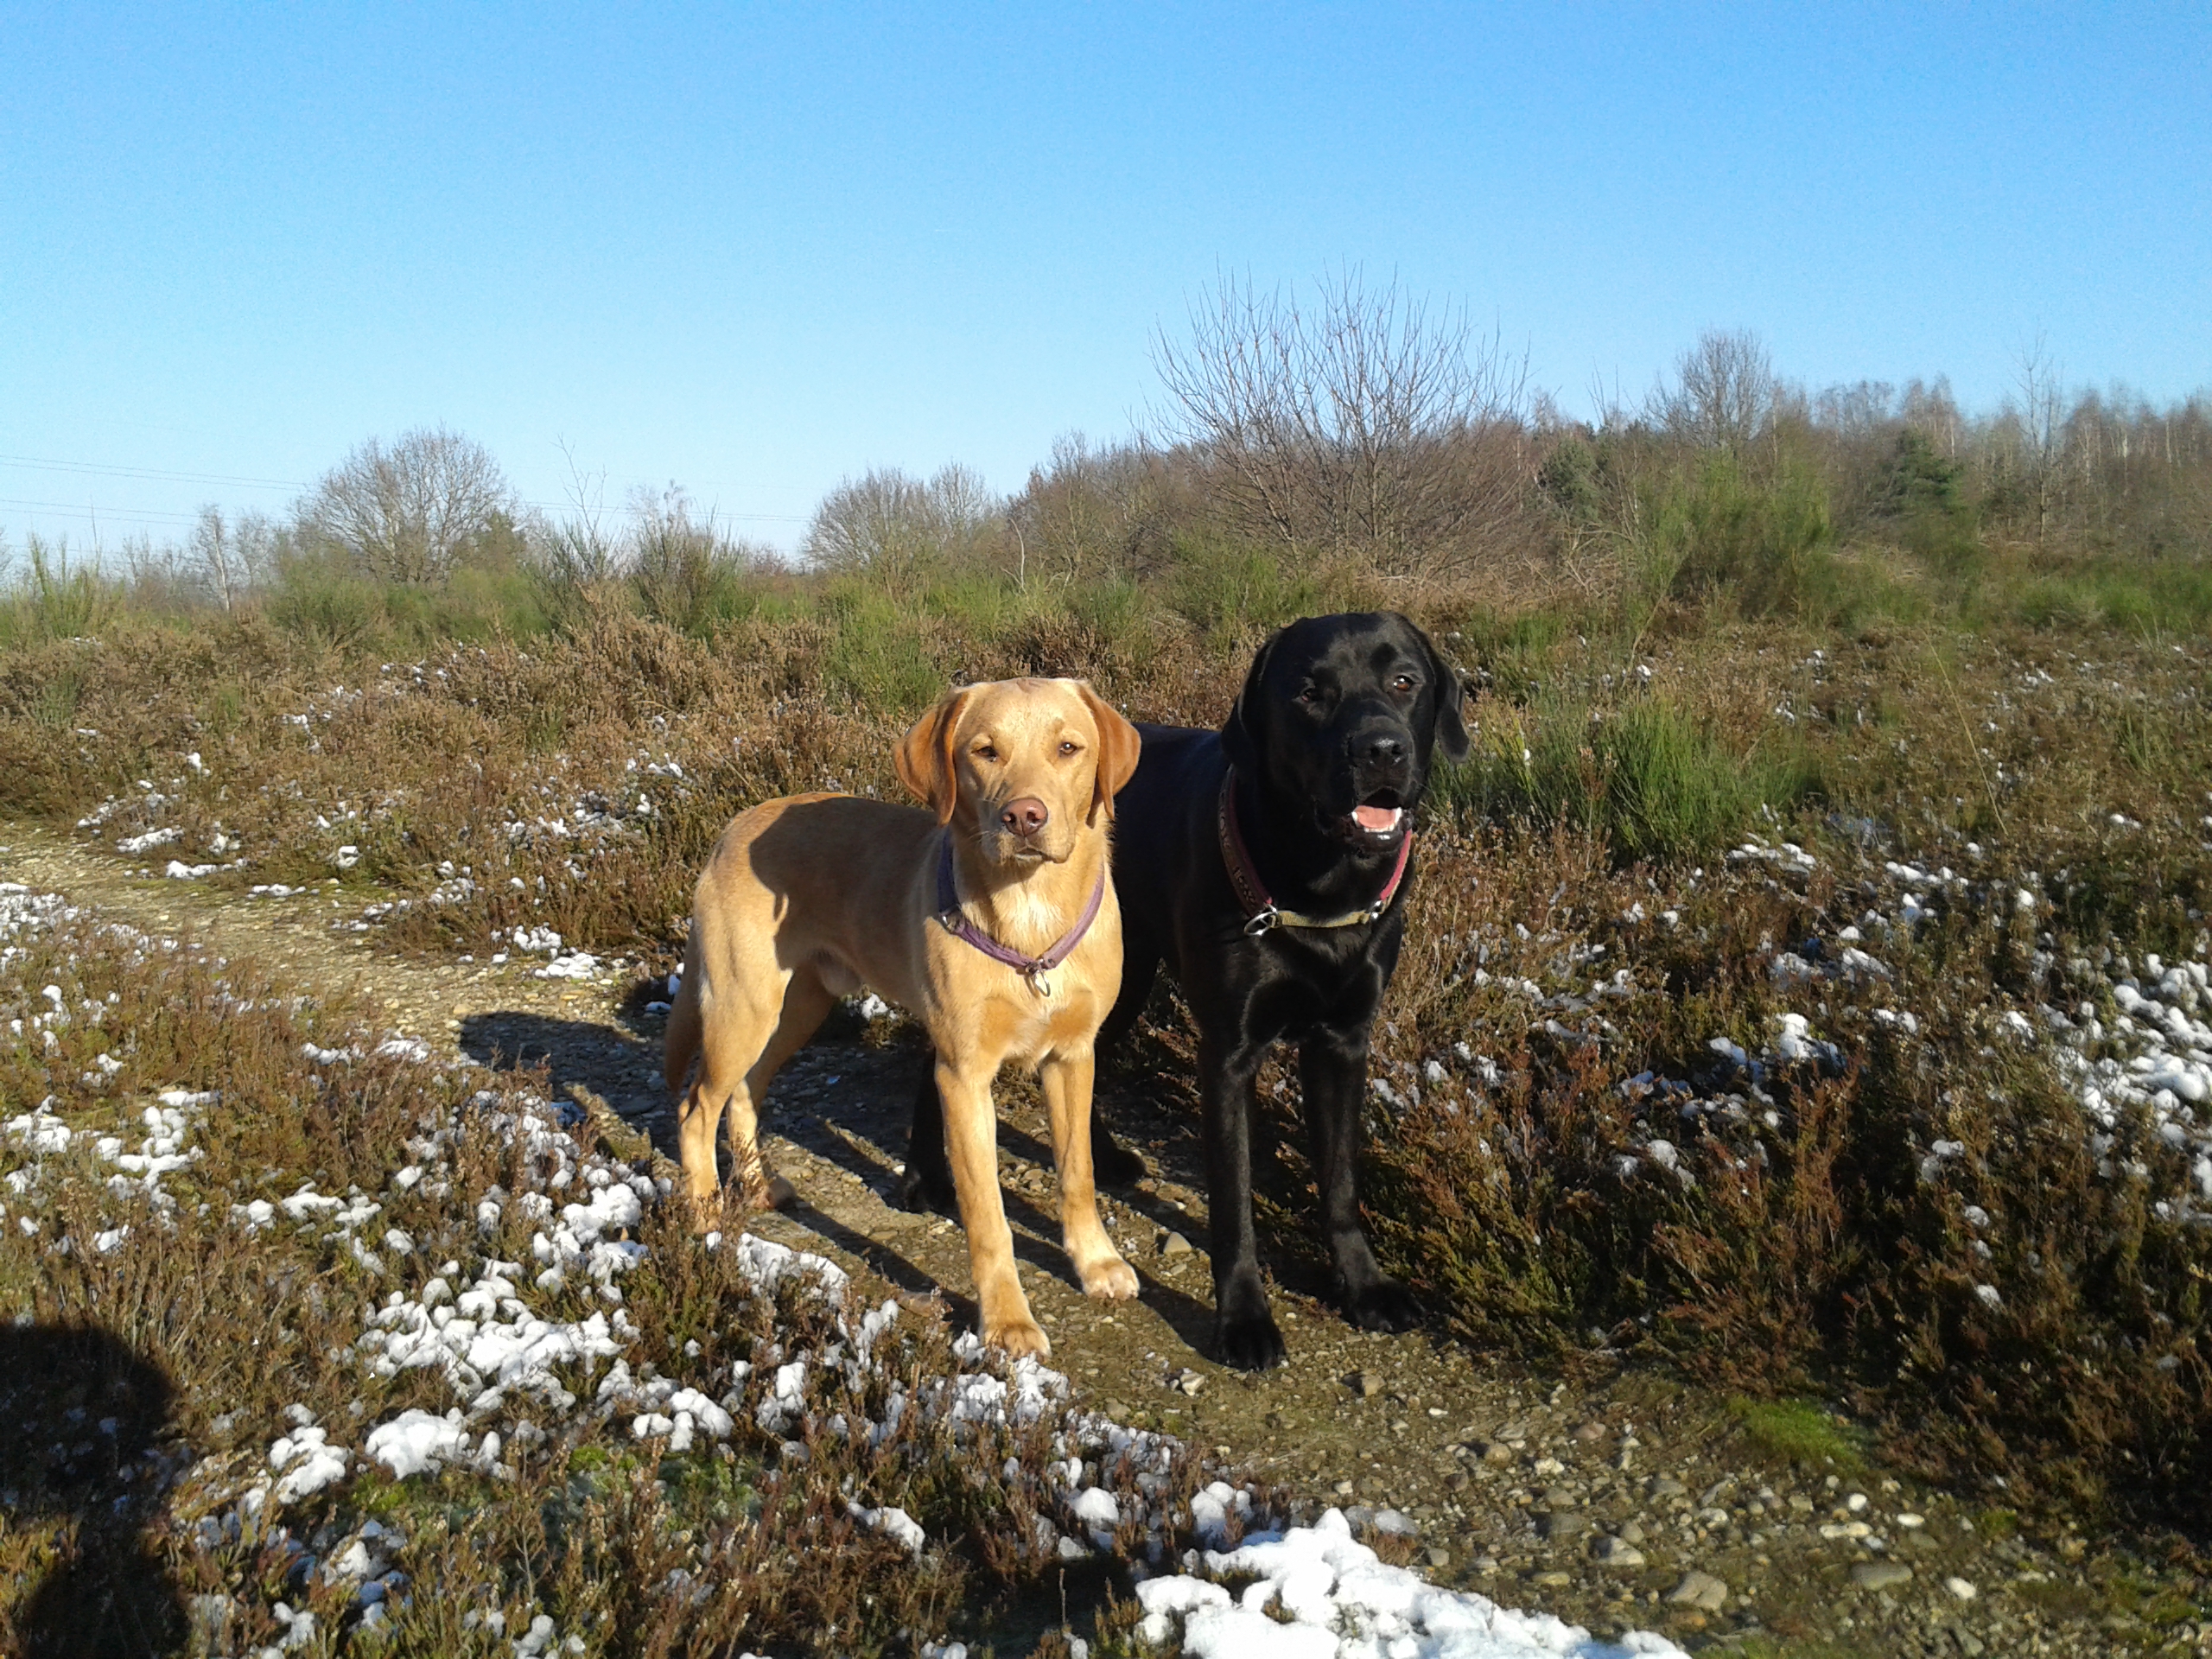 Auf diesem Bild stehen Labrador Baldo und Labrador Geirdi in eisiger Landschaft und blauem Himmel